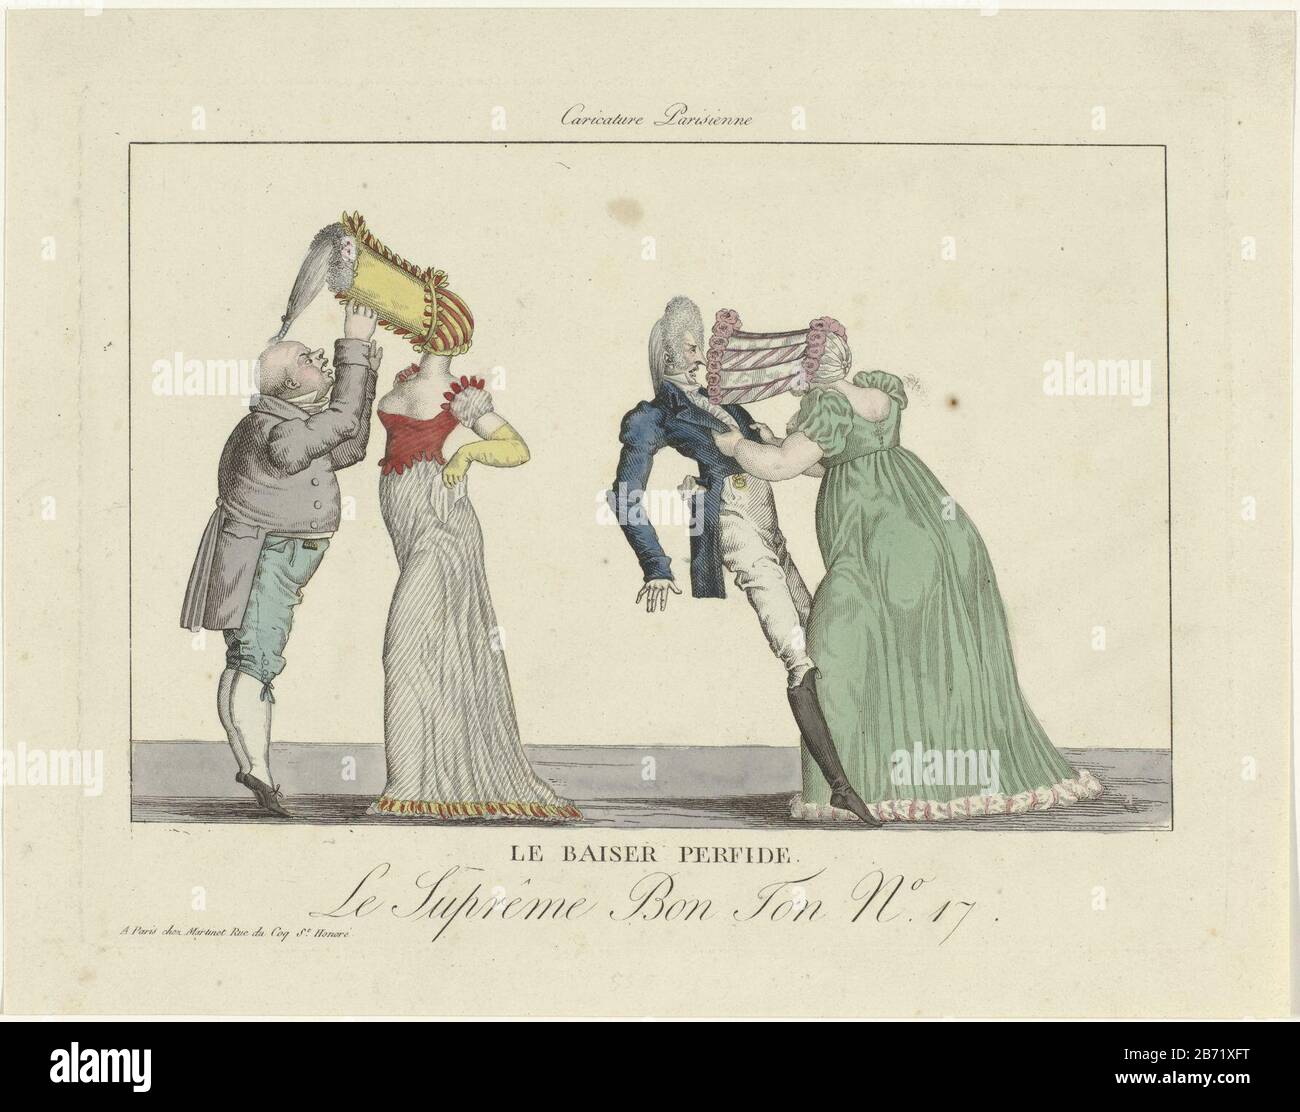 La caricatura sui grandi cappelli a baldacchino era in voga intorno al 1800-1815.  Due coppie Dove: Fornisce il cofano poke della donna problemi. In una  coppia della parrucca dell'uomo rimane incastrato nel